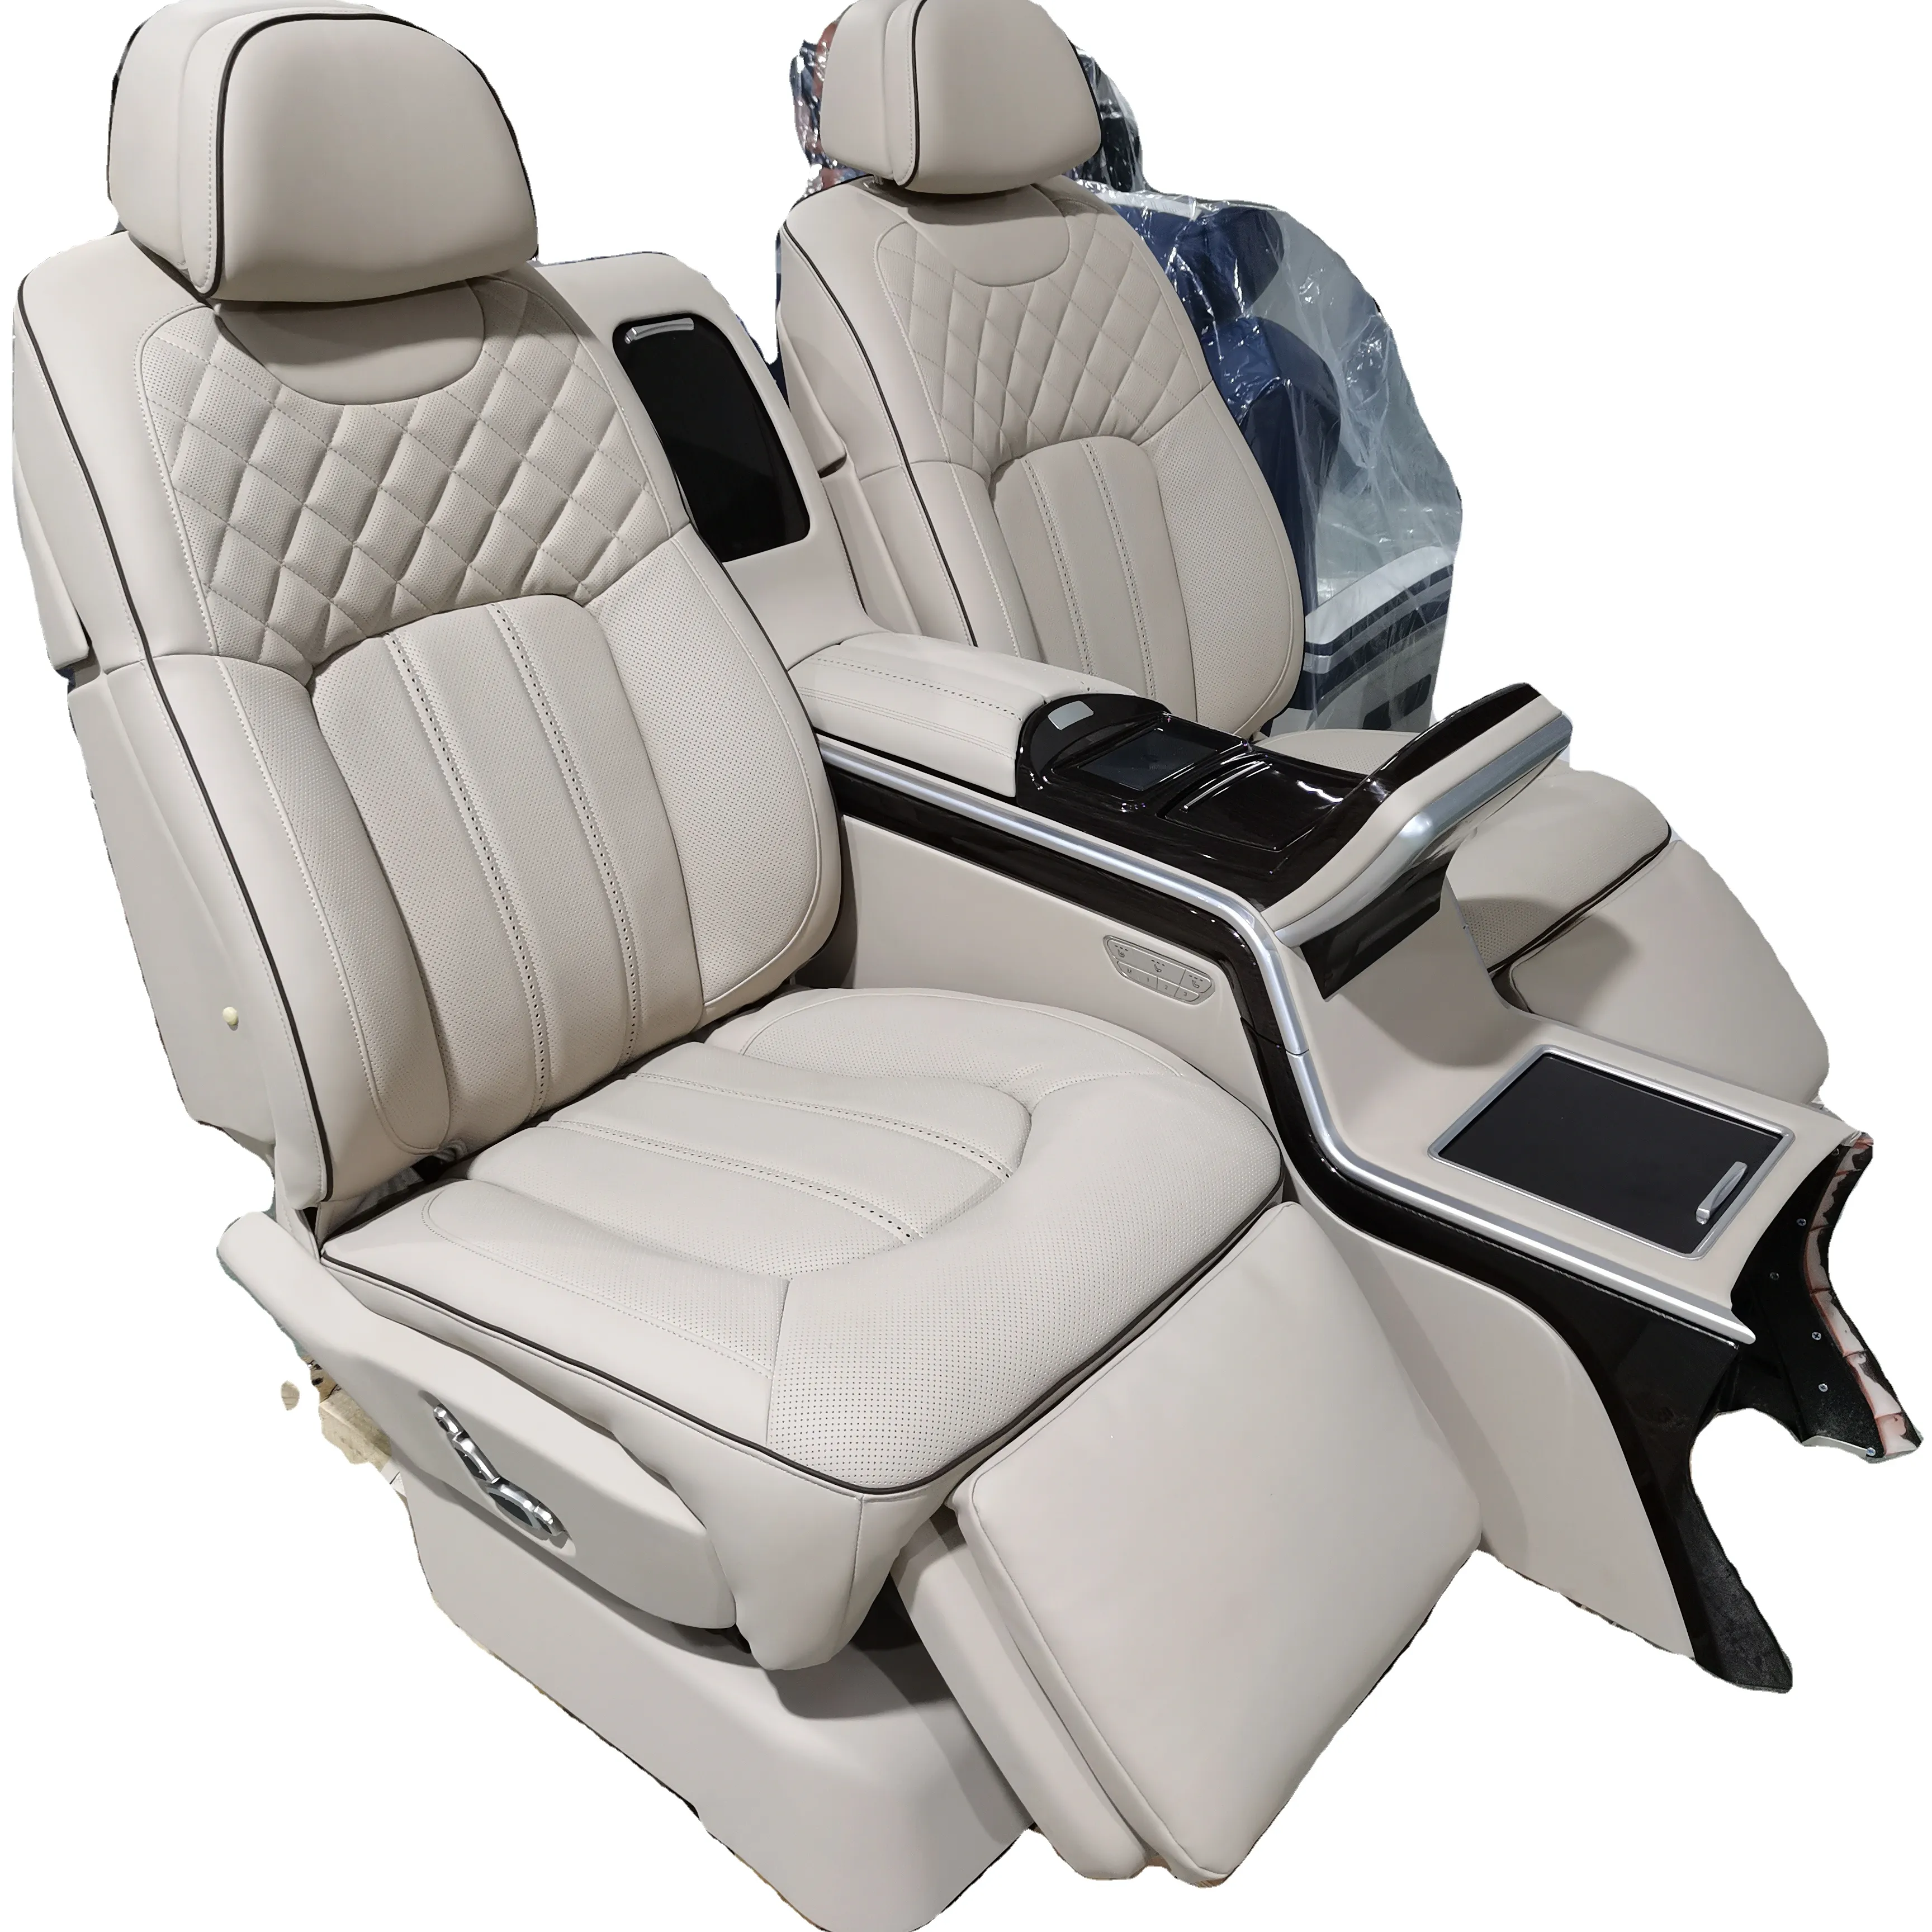 Assento de carro elétrico, venda quente, remontagem elétrica, modificada, luxo, com encosto reclinável, assento traseiro de carro, com van seat ajustável